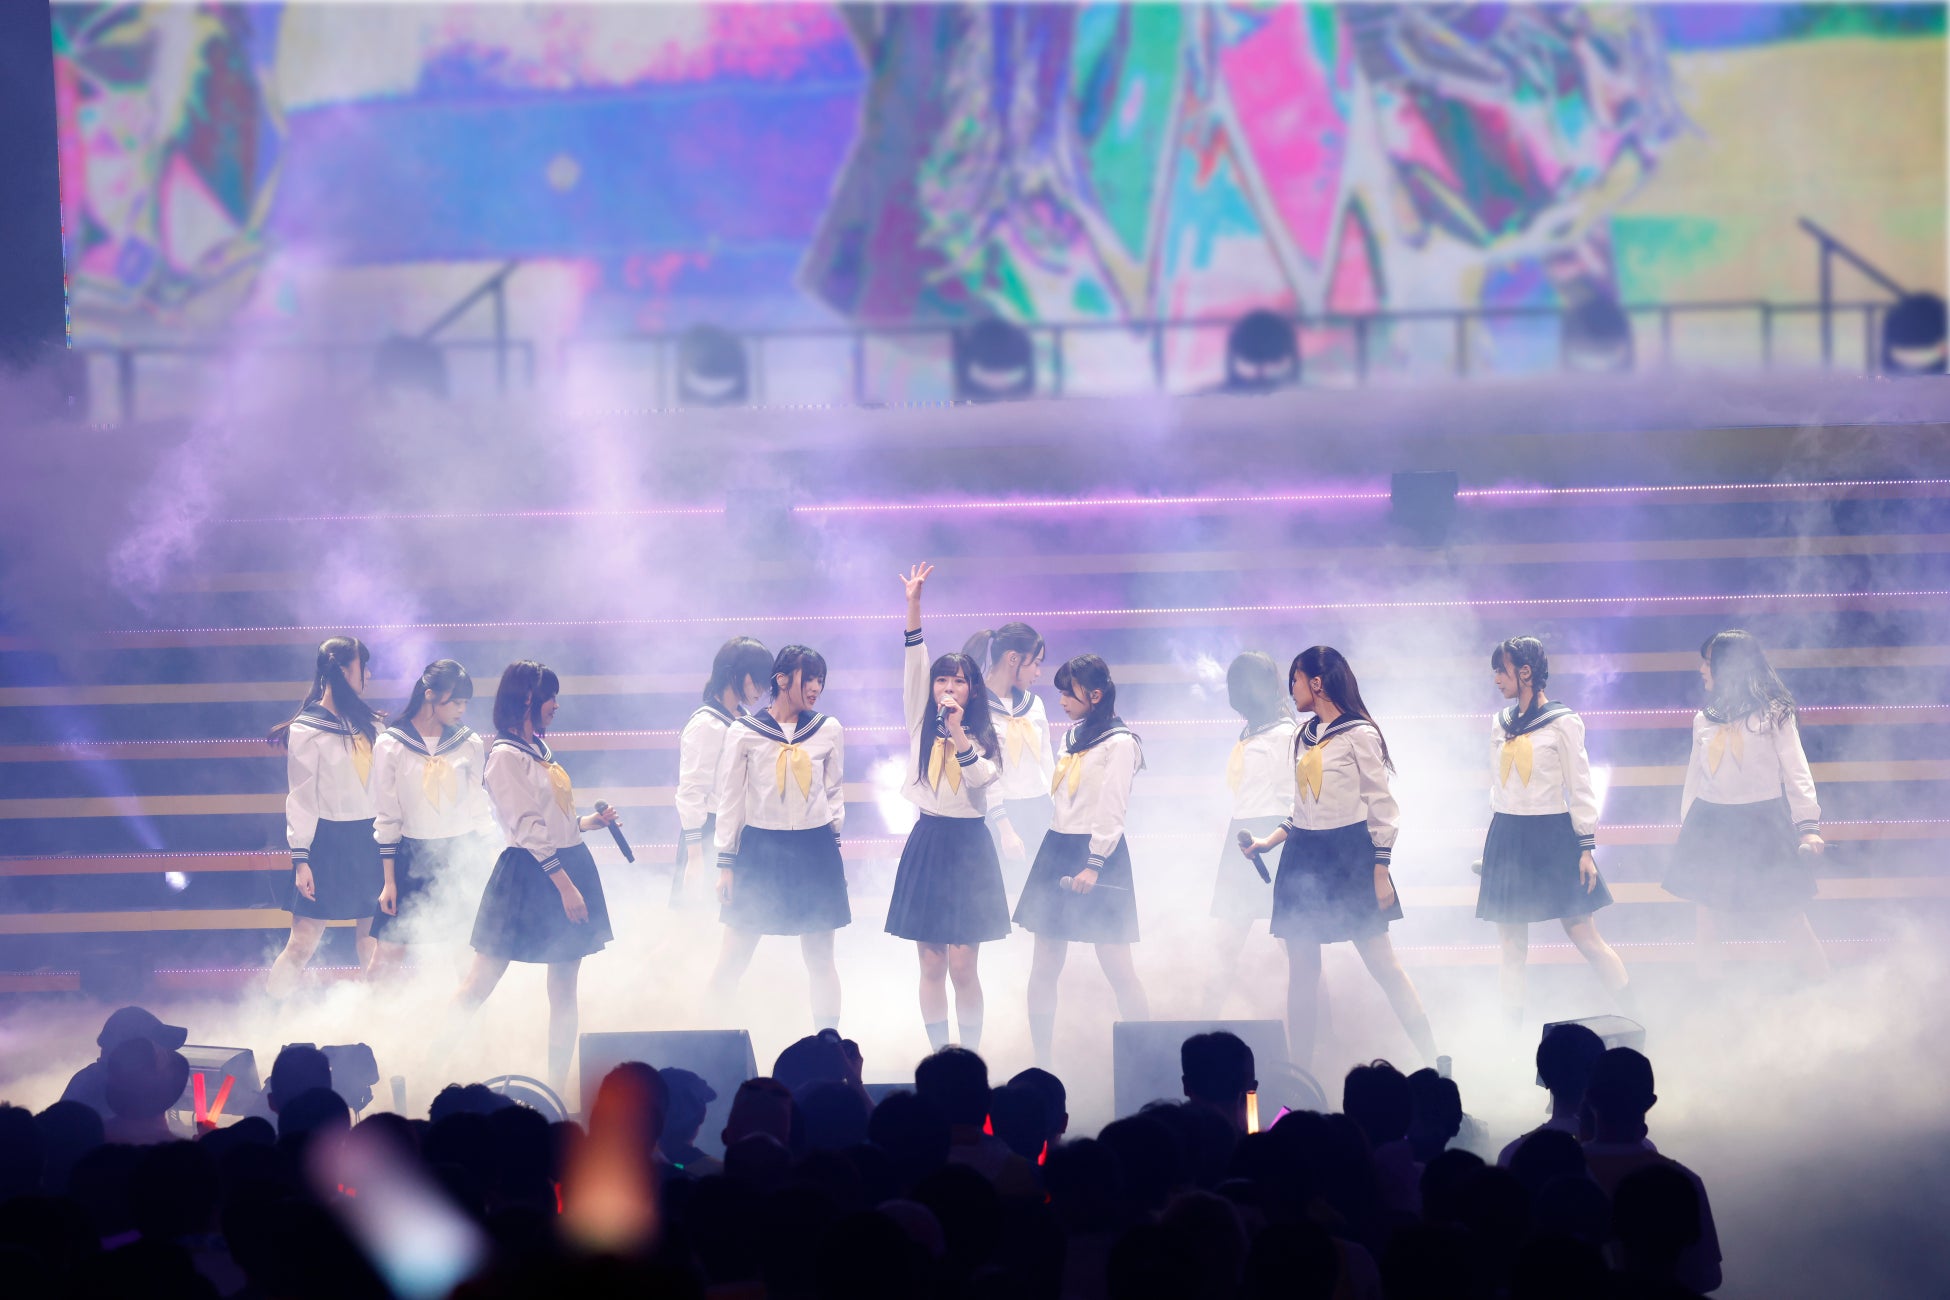 指原莉乃プロデュースによるアイドルグループ「≒JOY」≒JOY 1stコンサート「初めまして、≒JOYです。」をパシフィコ横浜 国立大ホールで開催！